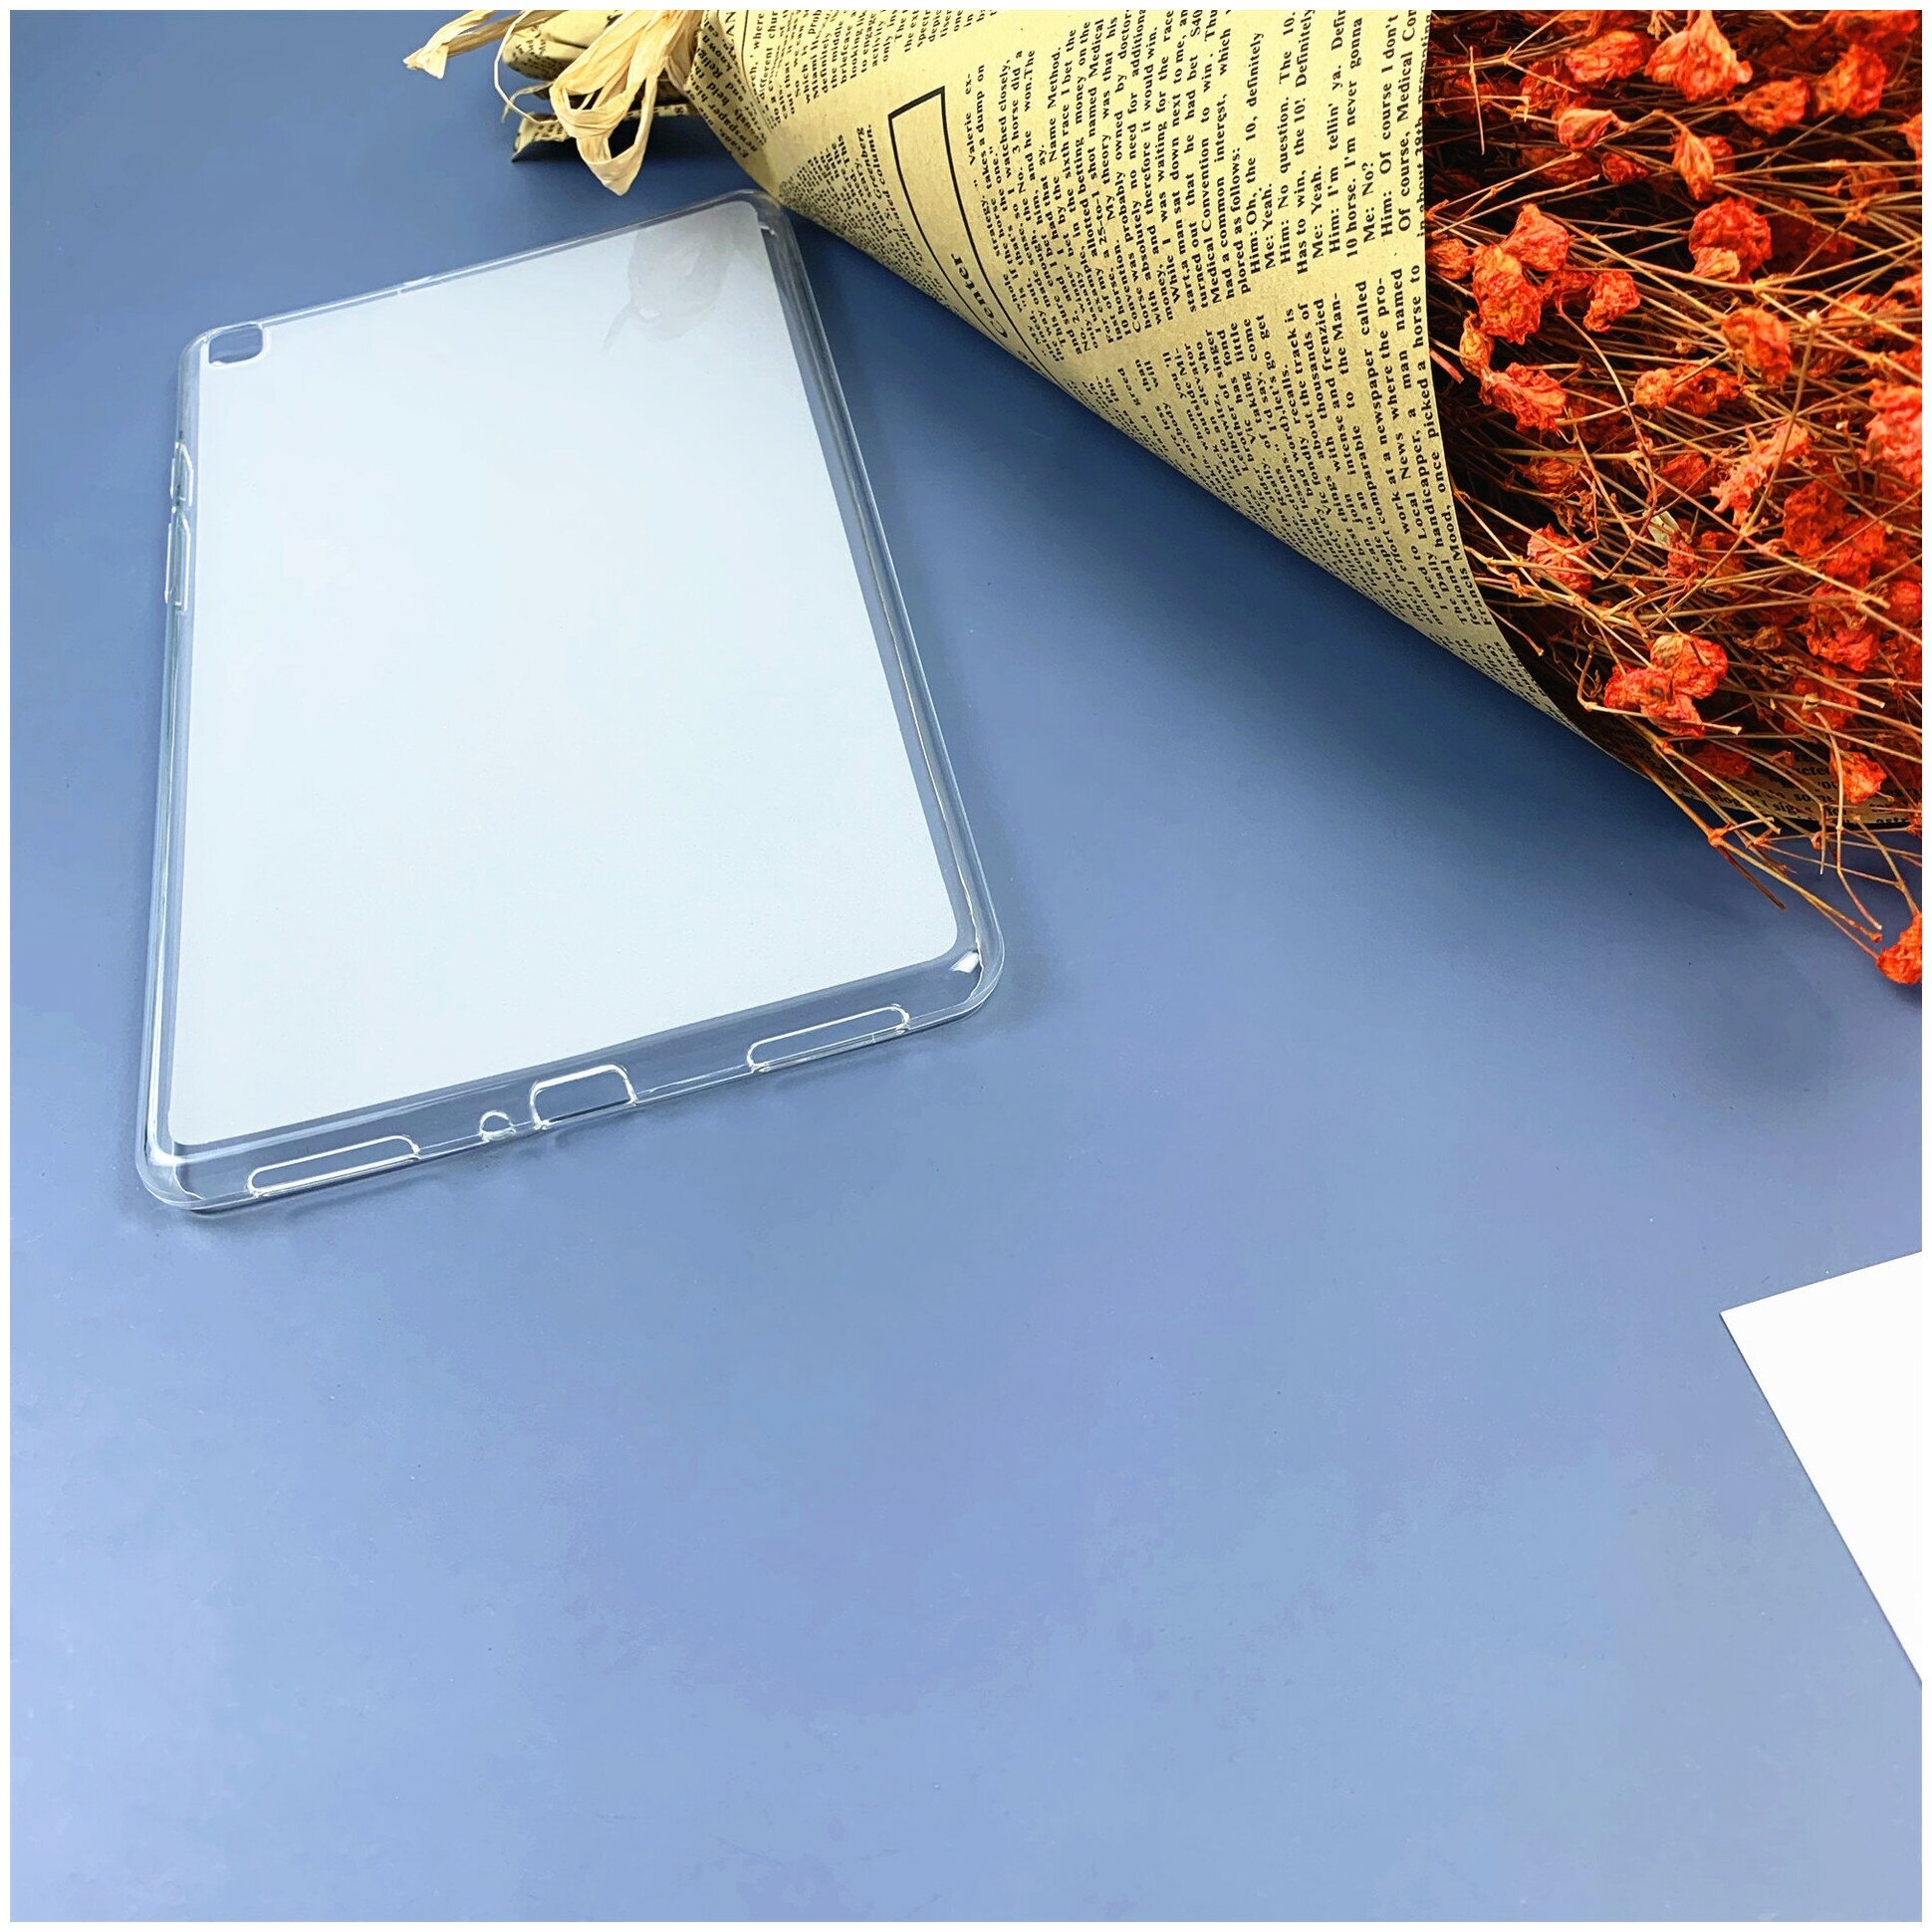 Чехол-накладка MyPads для Samsung Galaxy Tab A 8.0 (2019) SM-T290 / T295 ультра-тонкая полимерная из мягкого качественного силикона белая